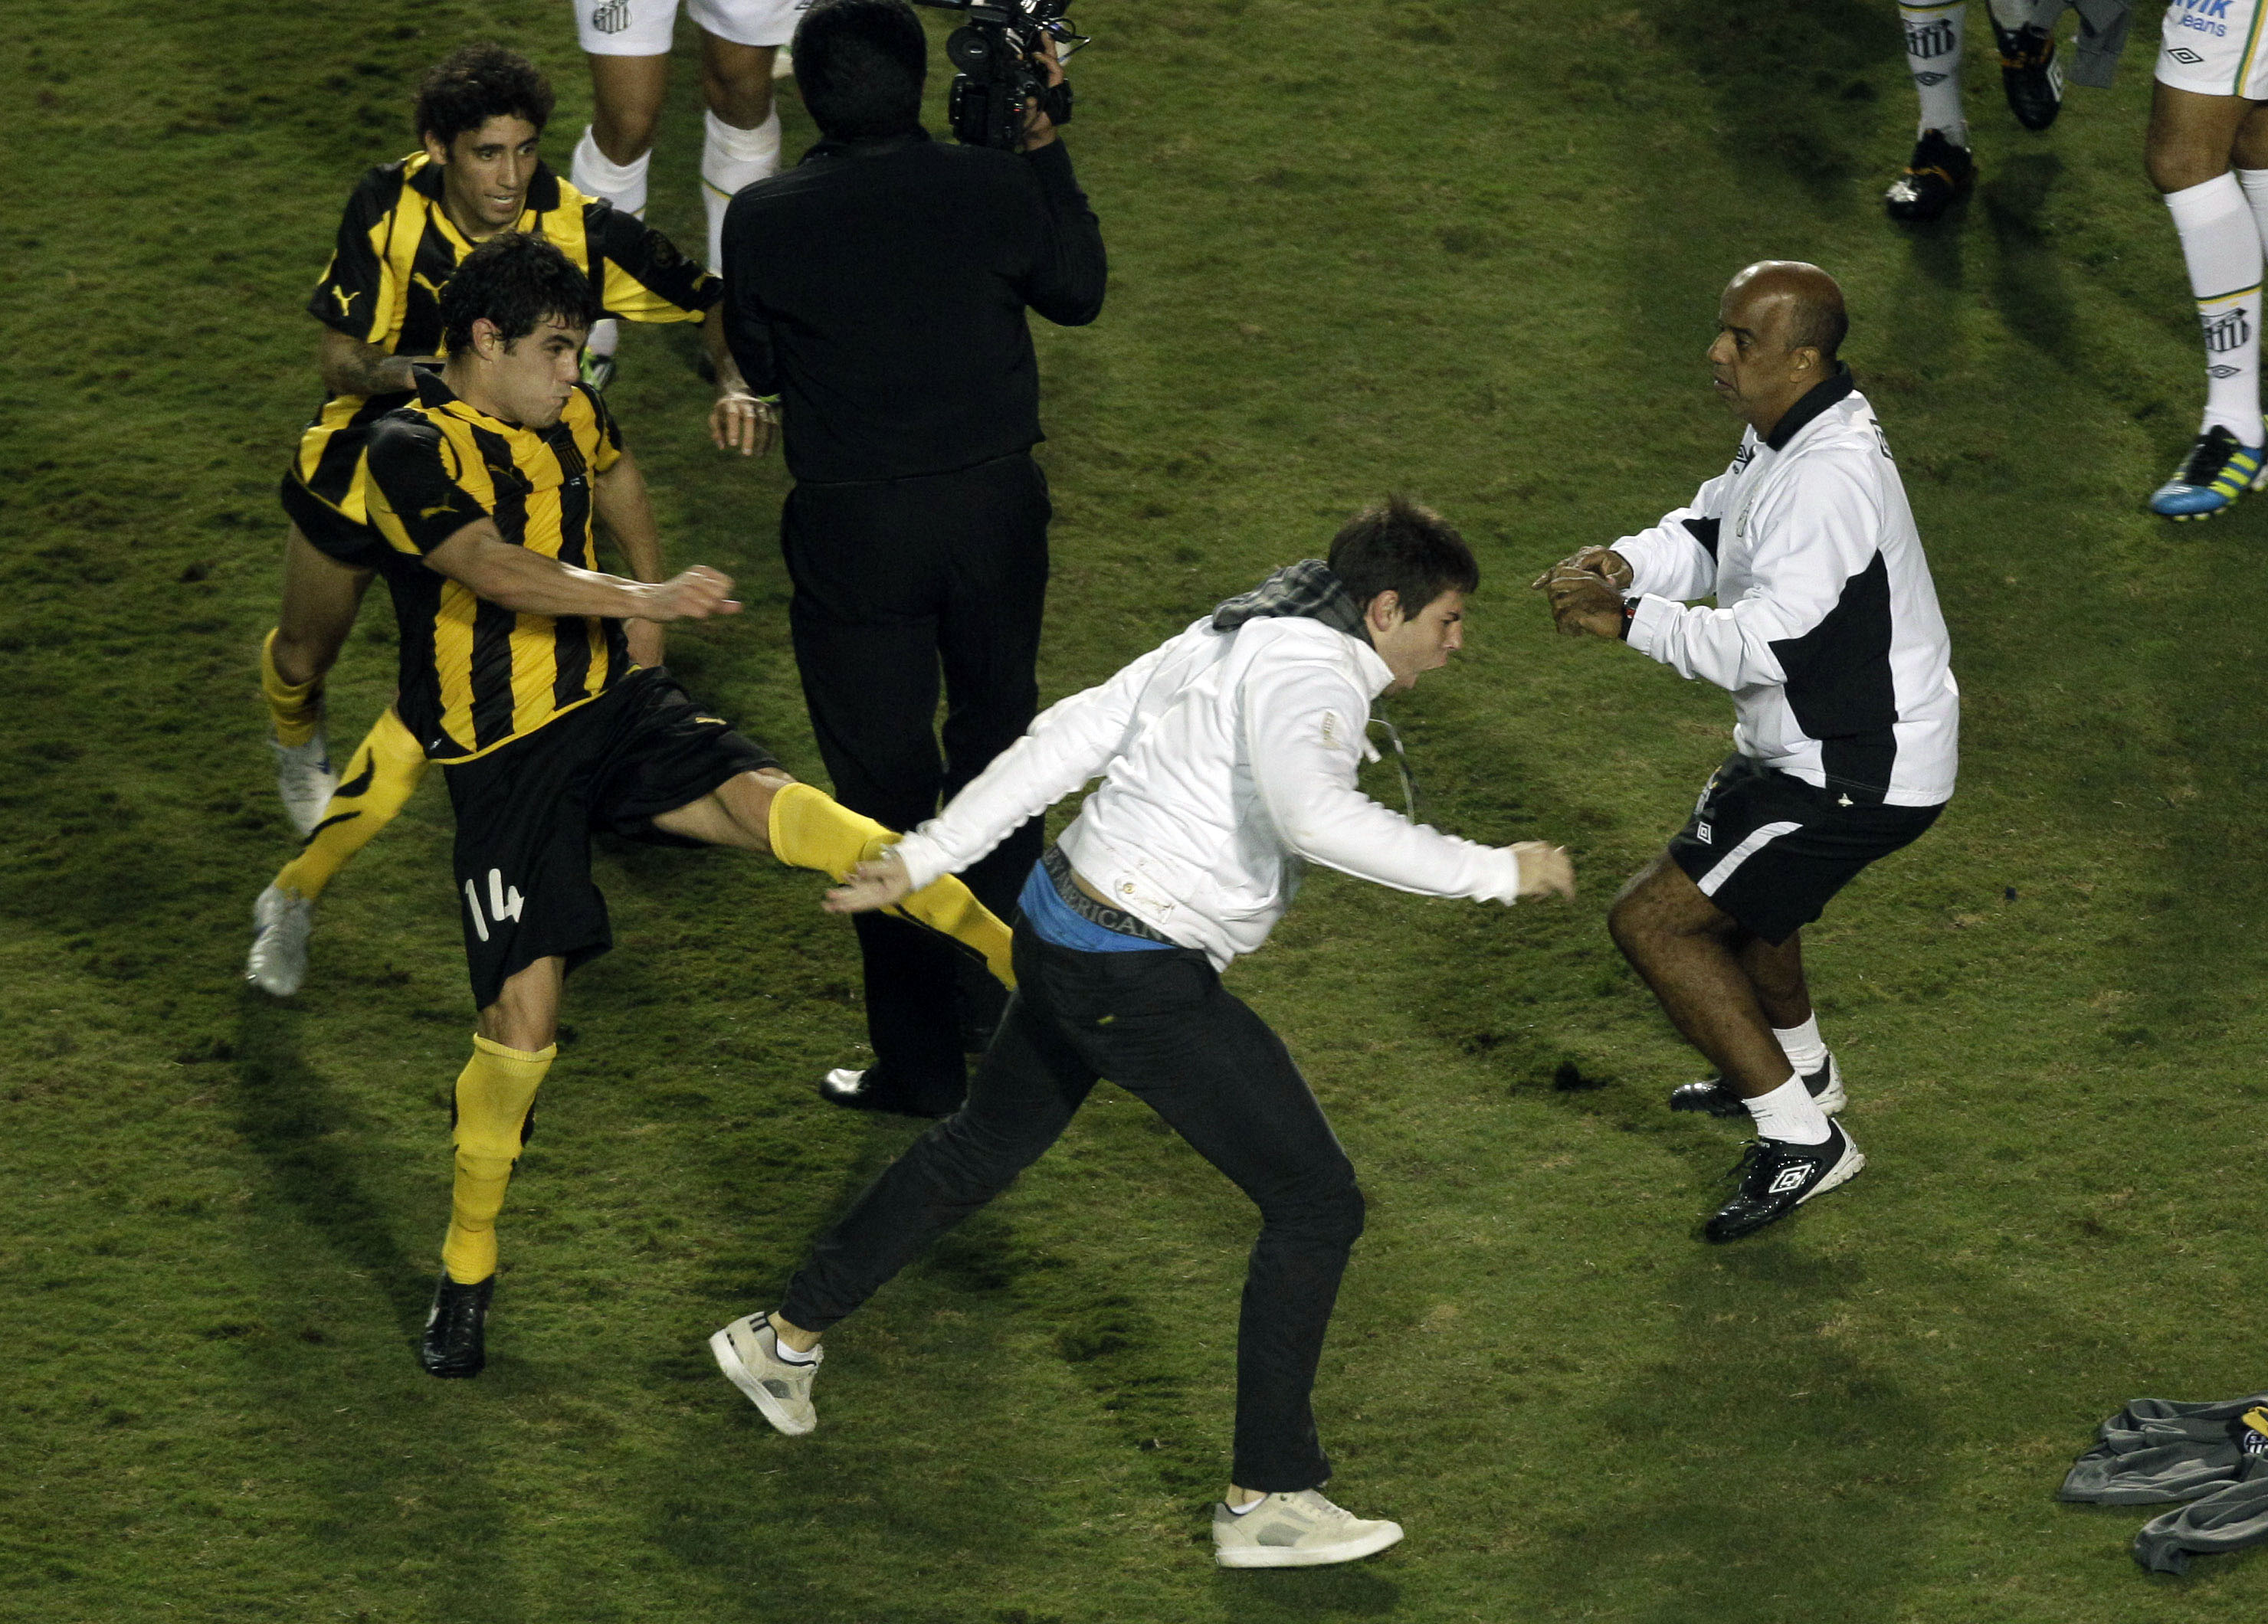 Till och med Santos fans tog sig in på plan för att vara med i slagsmålet. Här ses Luis Bernardo sparka mot en Santossupporter.